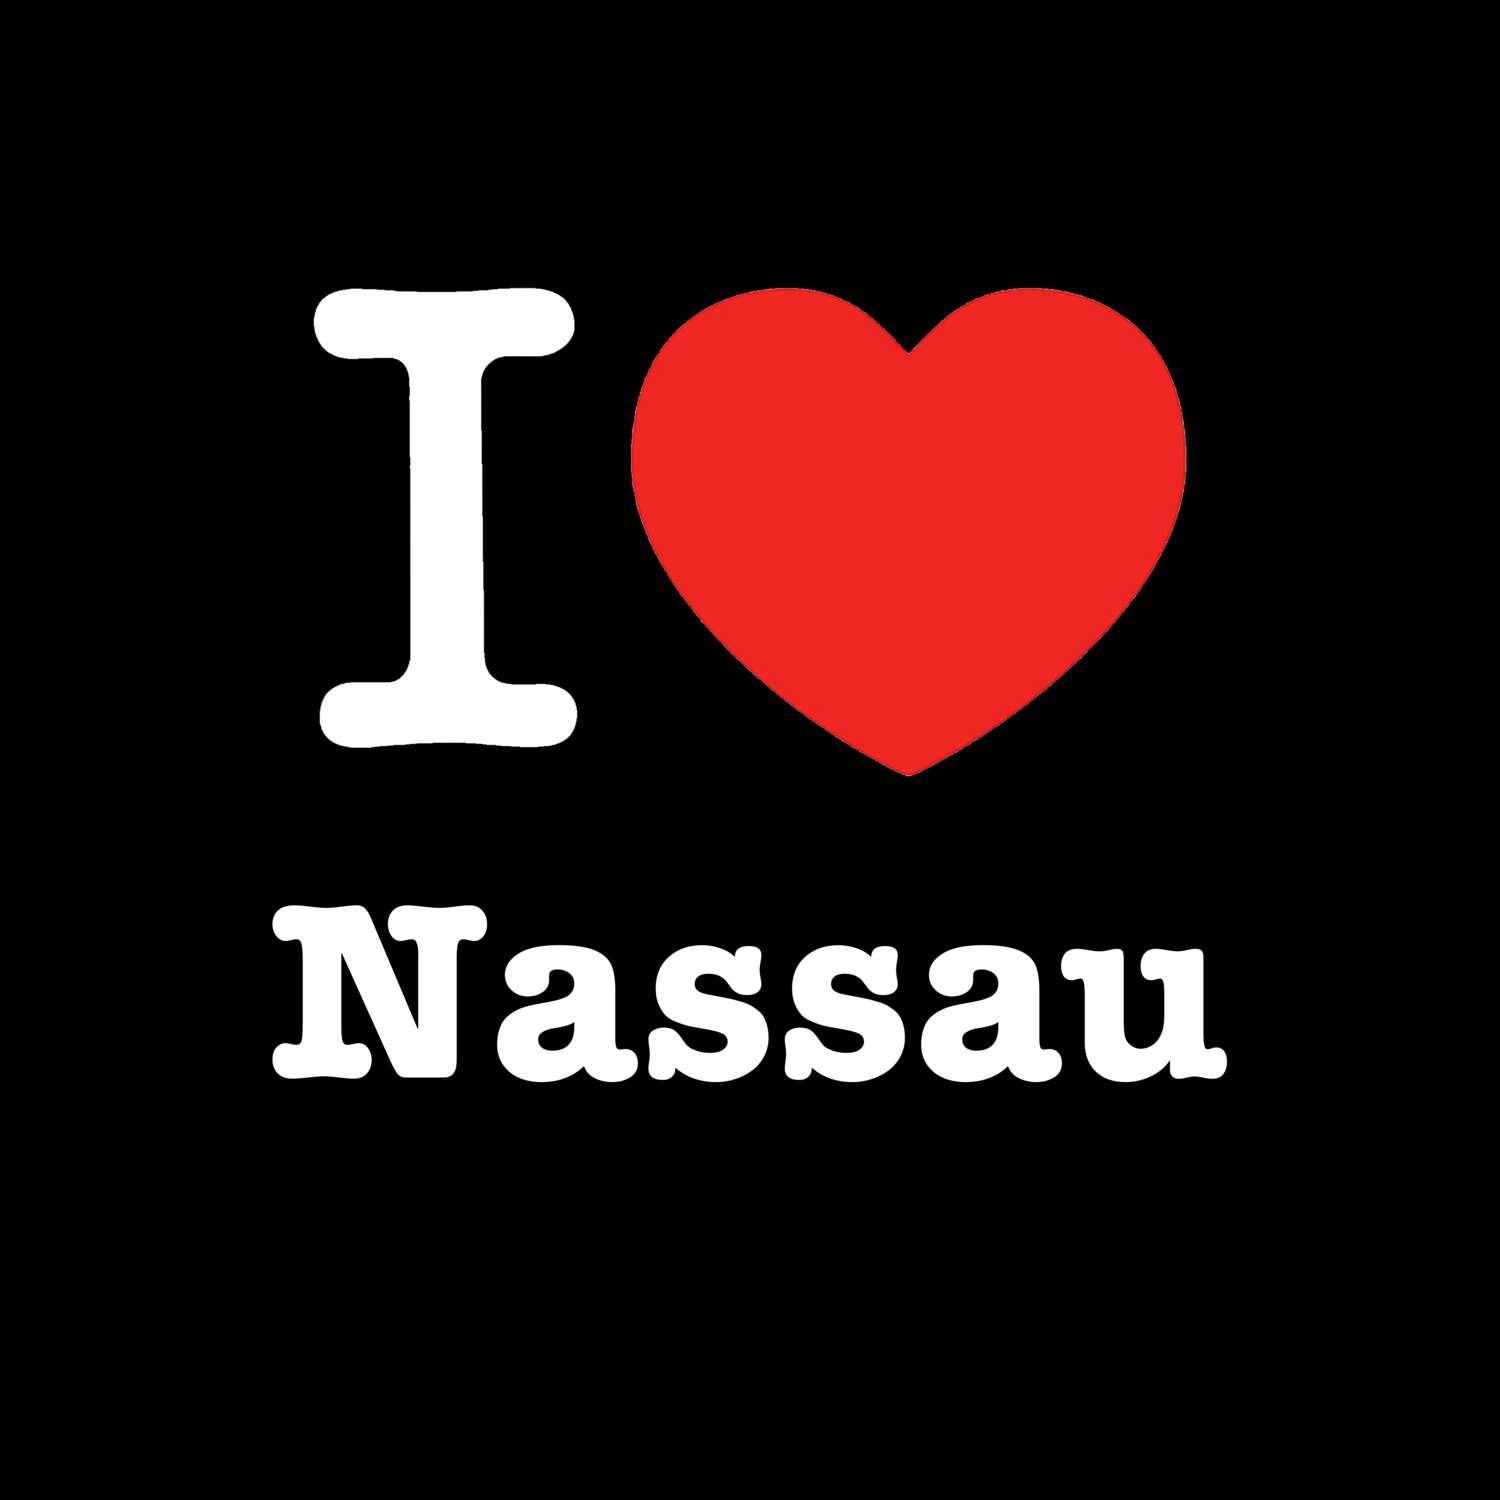 Nassau T-Shirt »I love«